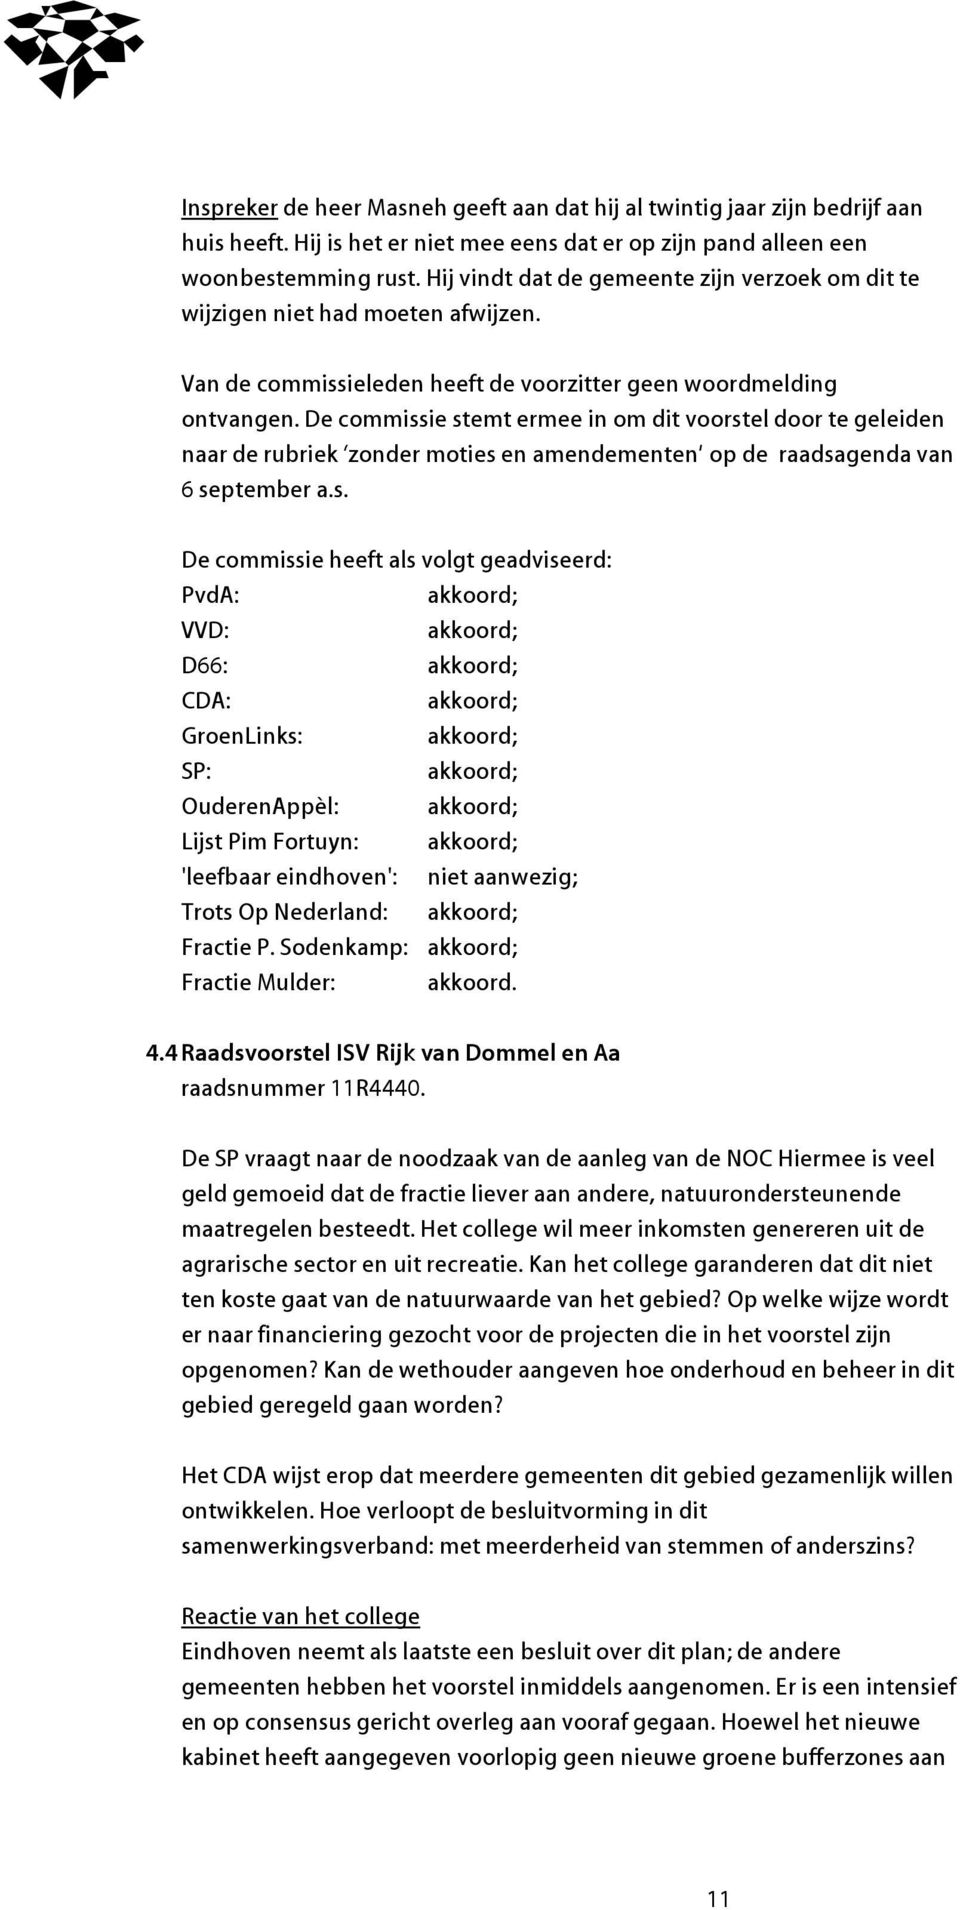 De commissie stemt ermee in om dit voorstel door te geleiden naar de rubriek zonder moties en amendementen op de raadsagenda van 6 september a.s. D66: OuderenAppèl: Lijst Pim Fortuyn: Trots Op Nederland: Fractie P.